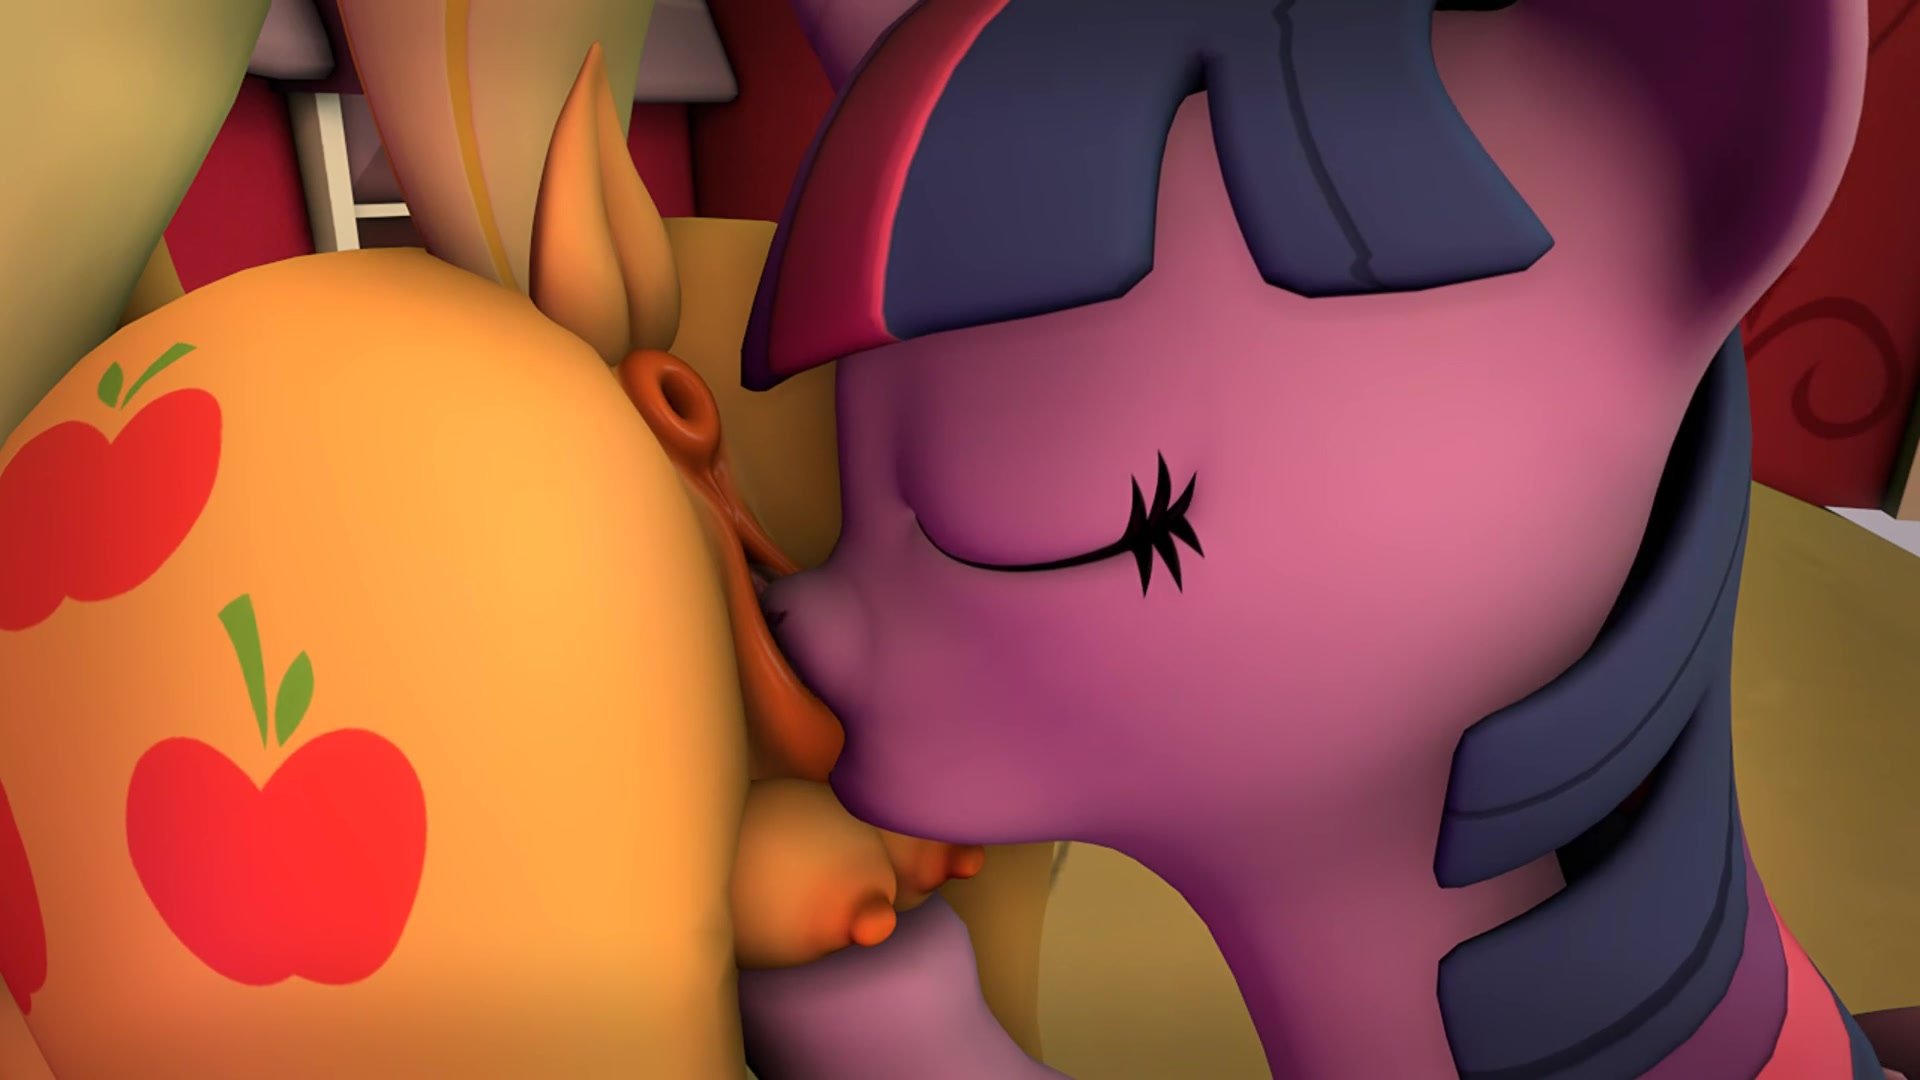 3d Elf Porn Lesbian Kissing - Twilight has a moment with applejack - ThisVid.com